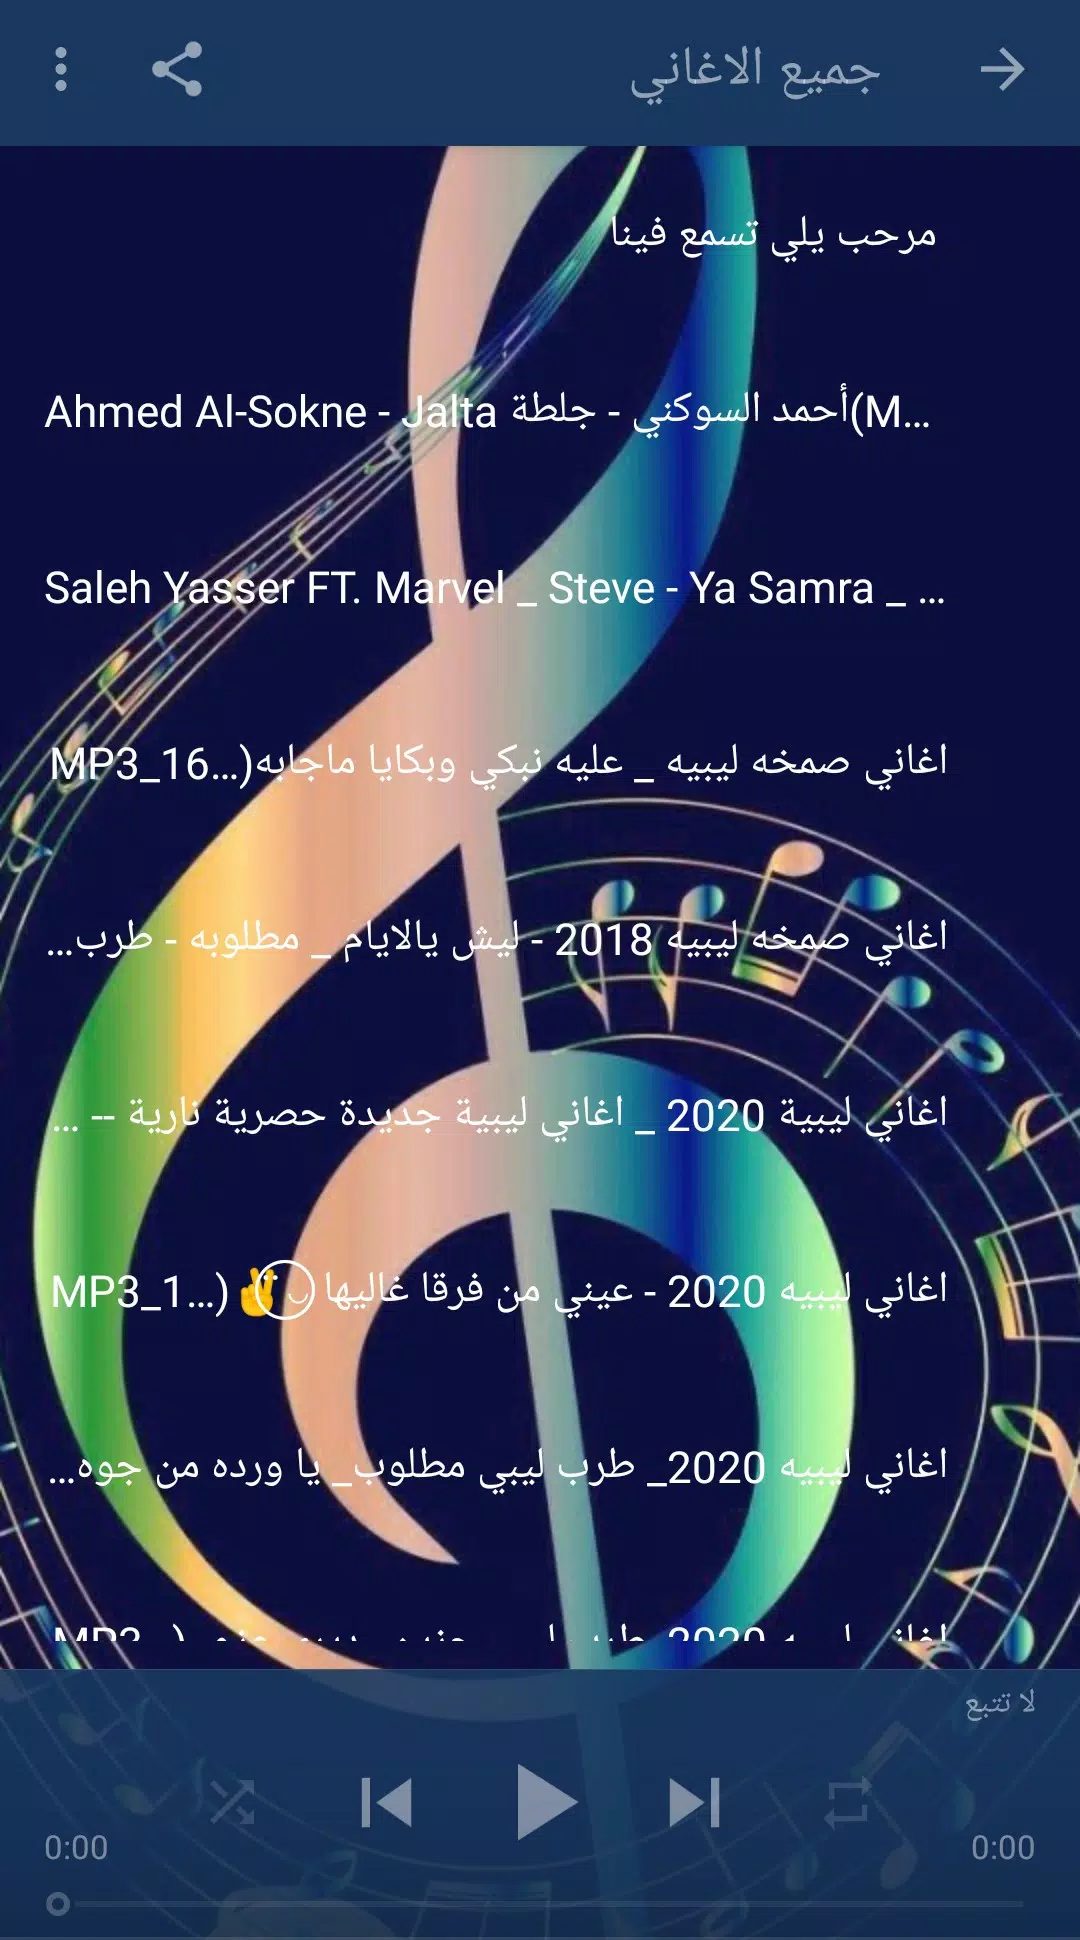 اغاني ليبية APK for Android Download